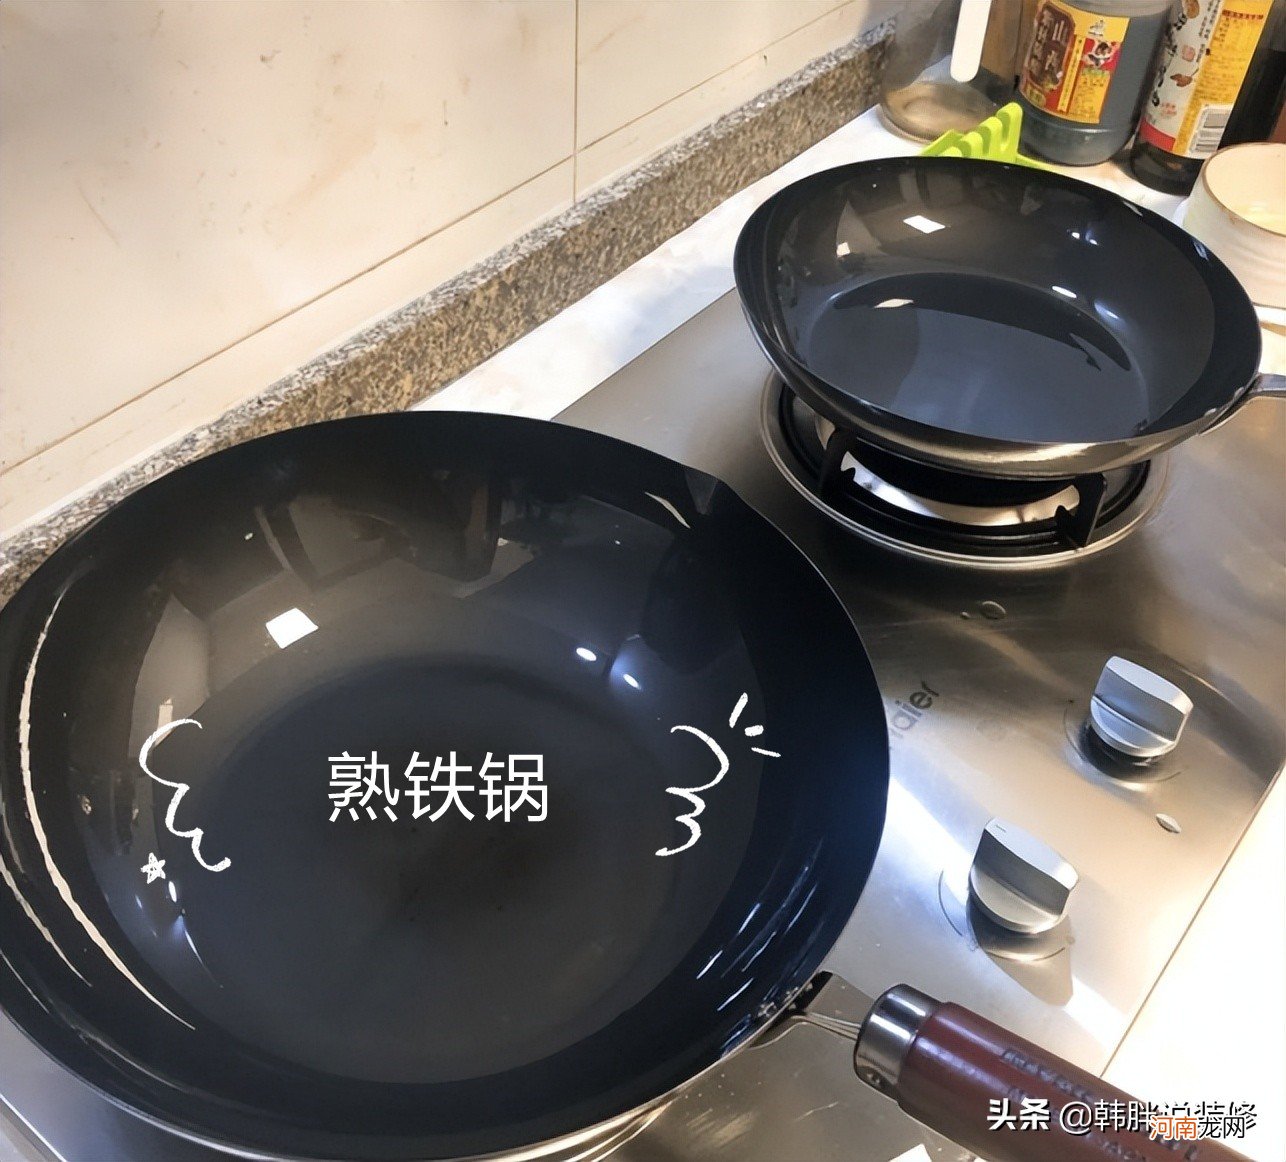 有这五种锅就够了。 锅里有什么锅？